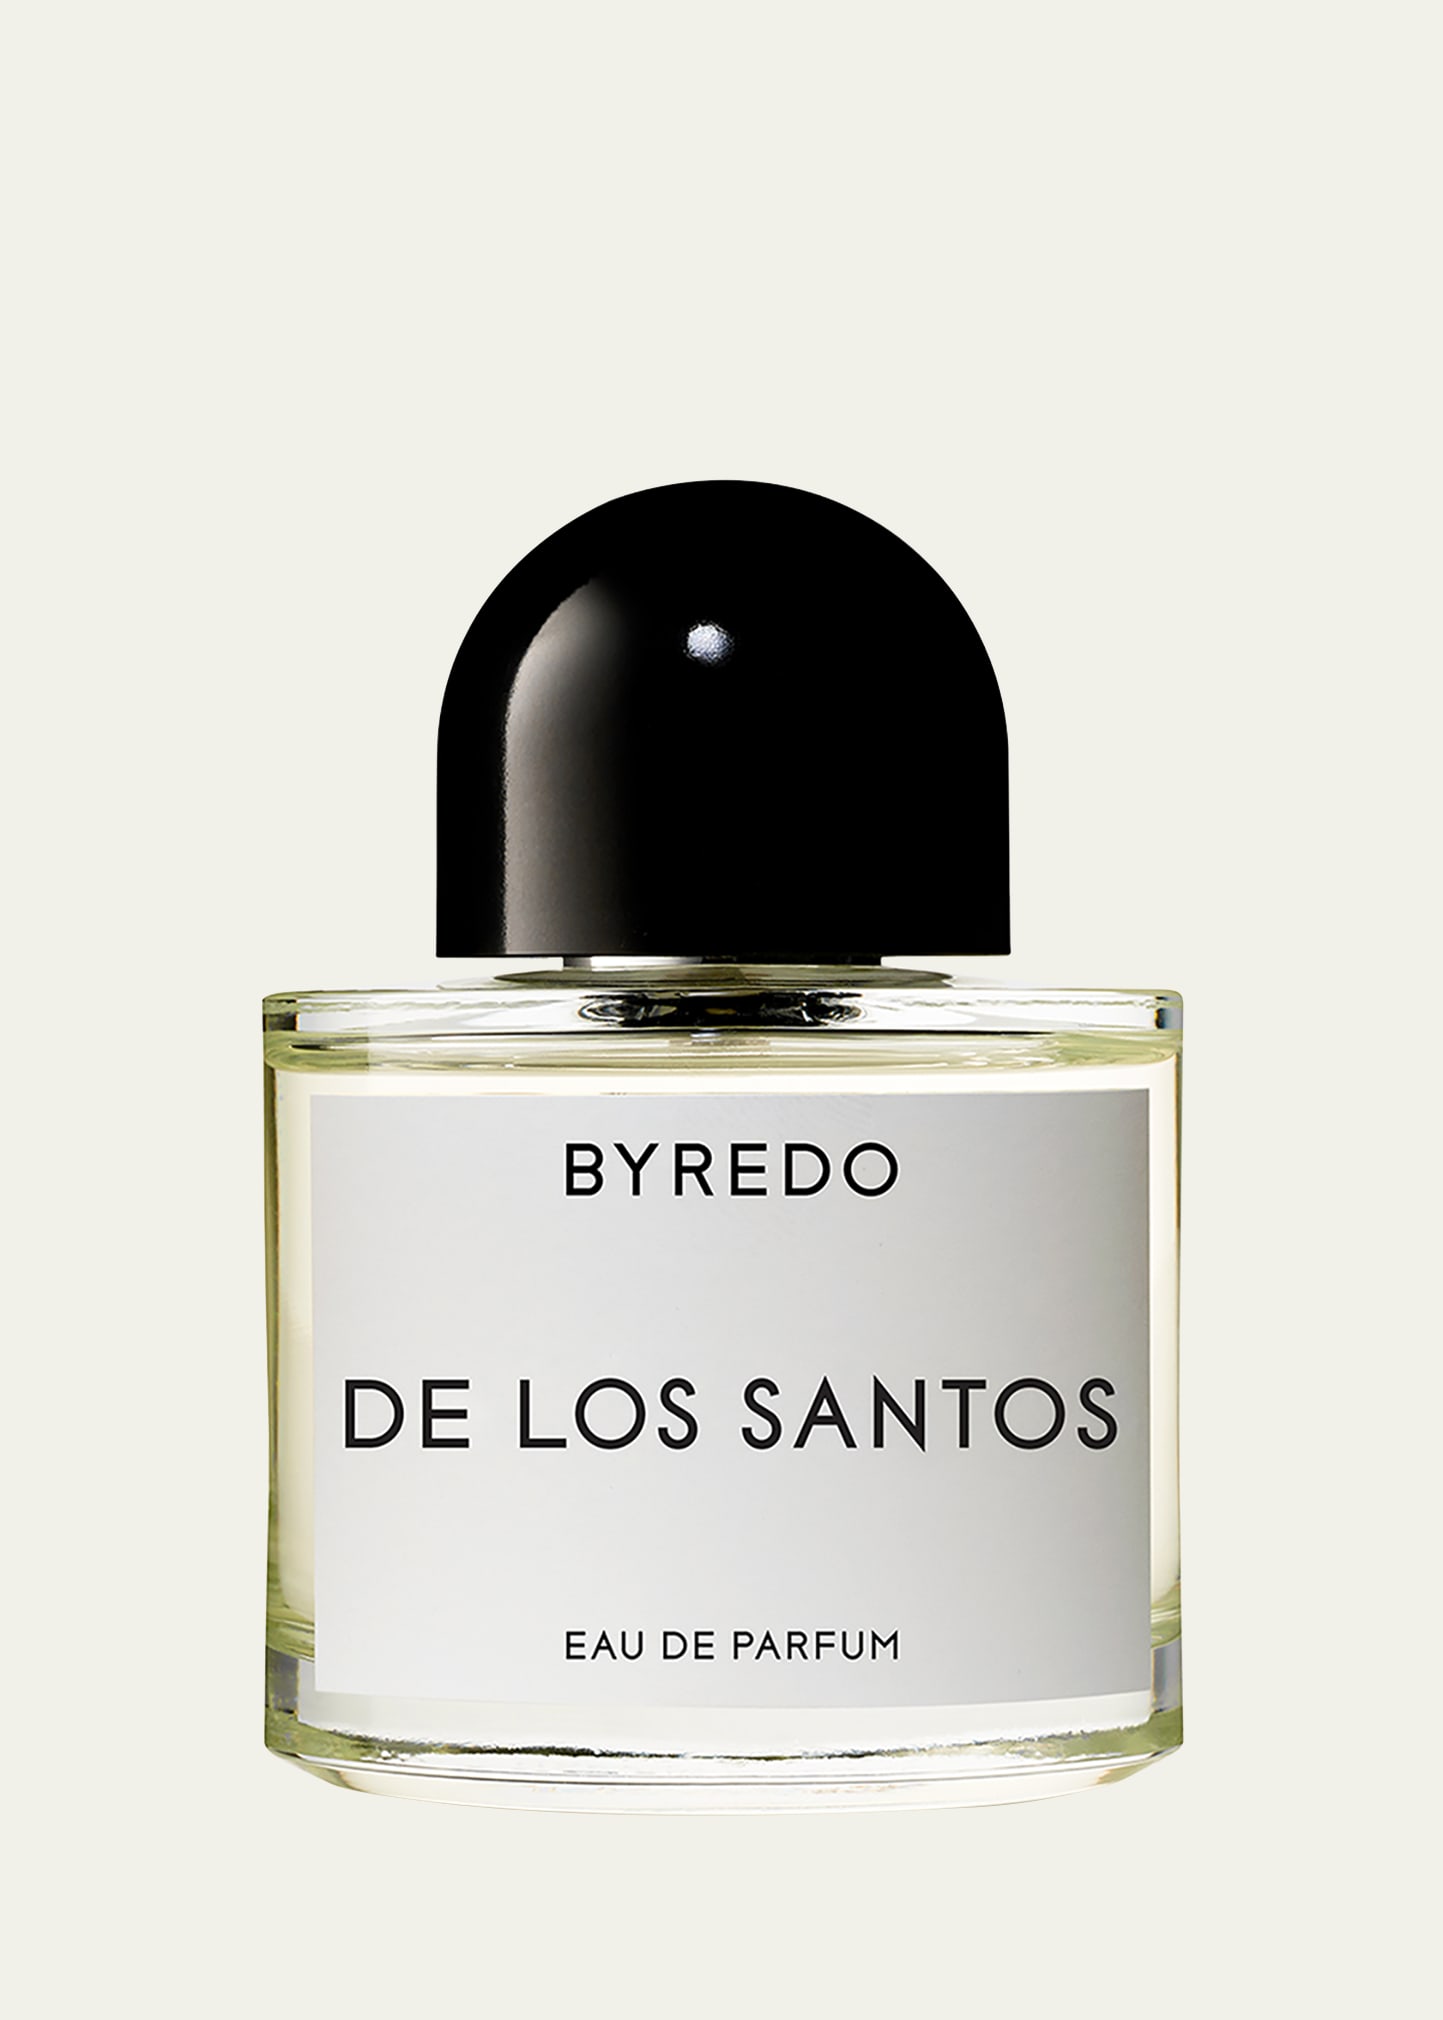 De Los Santos Eau de Parfum, 1.7 oz.